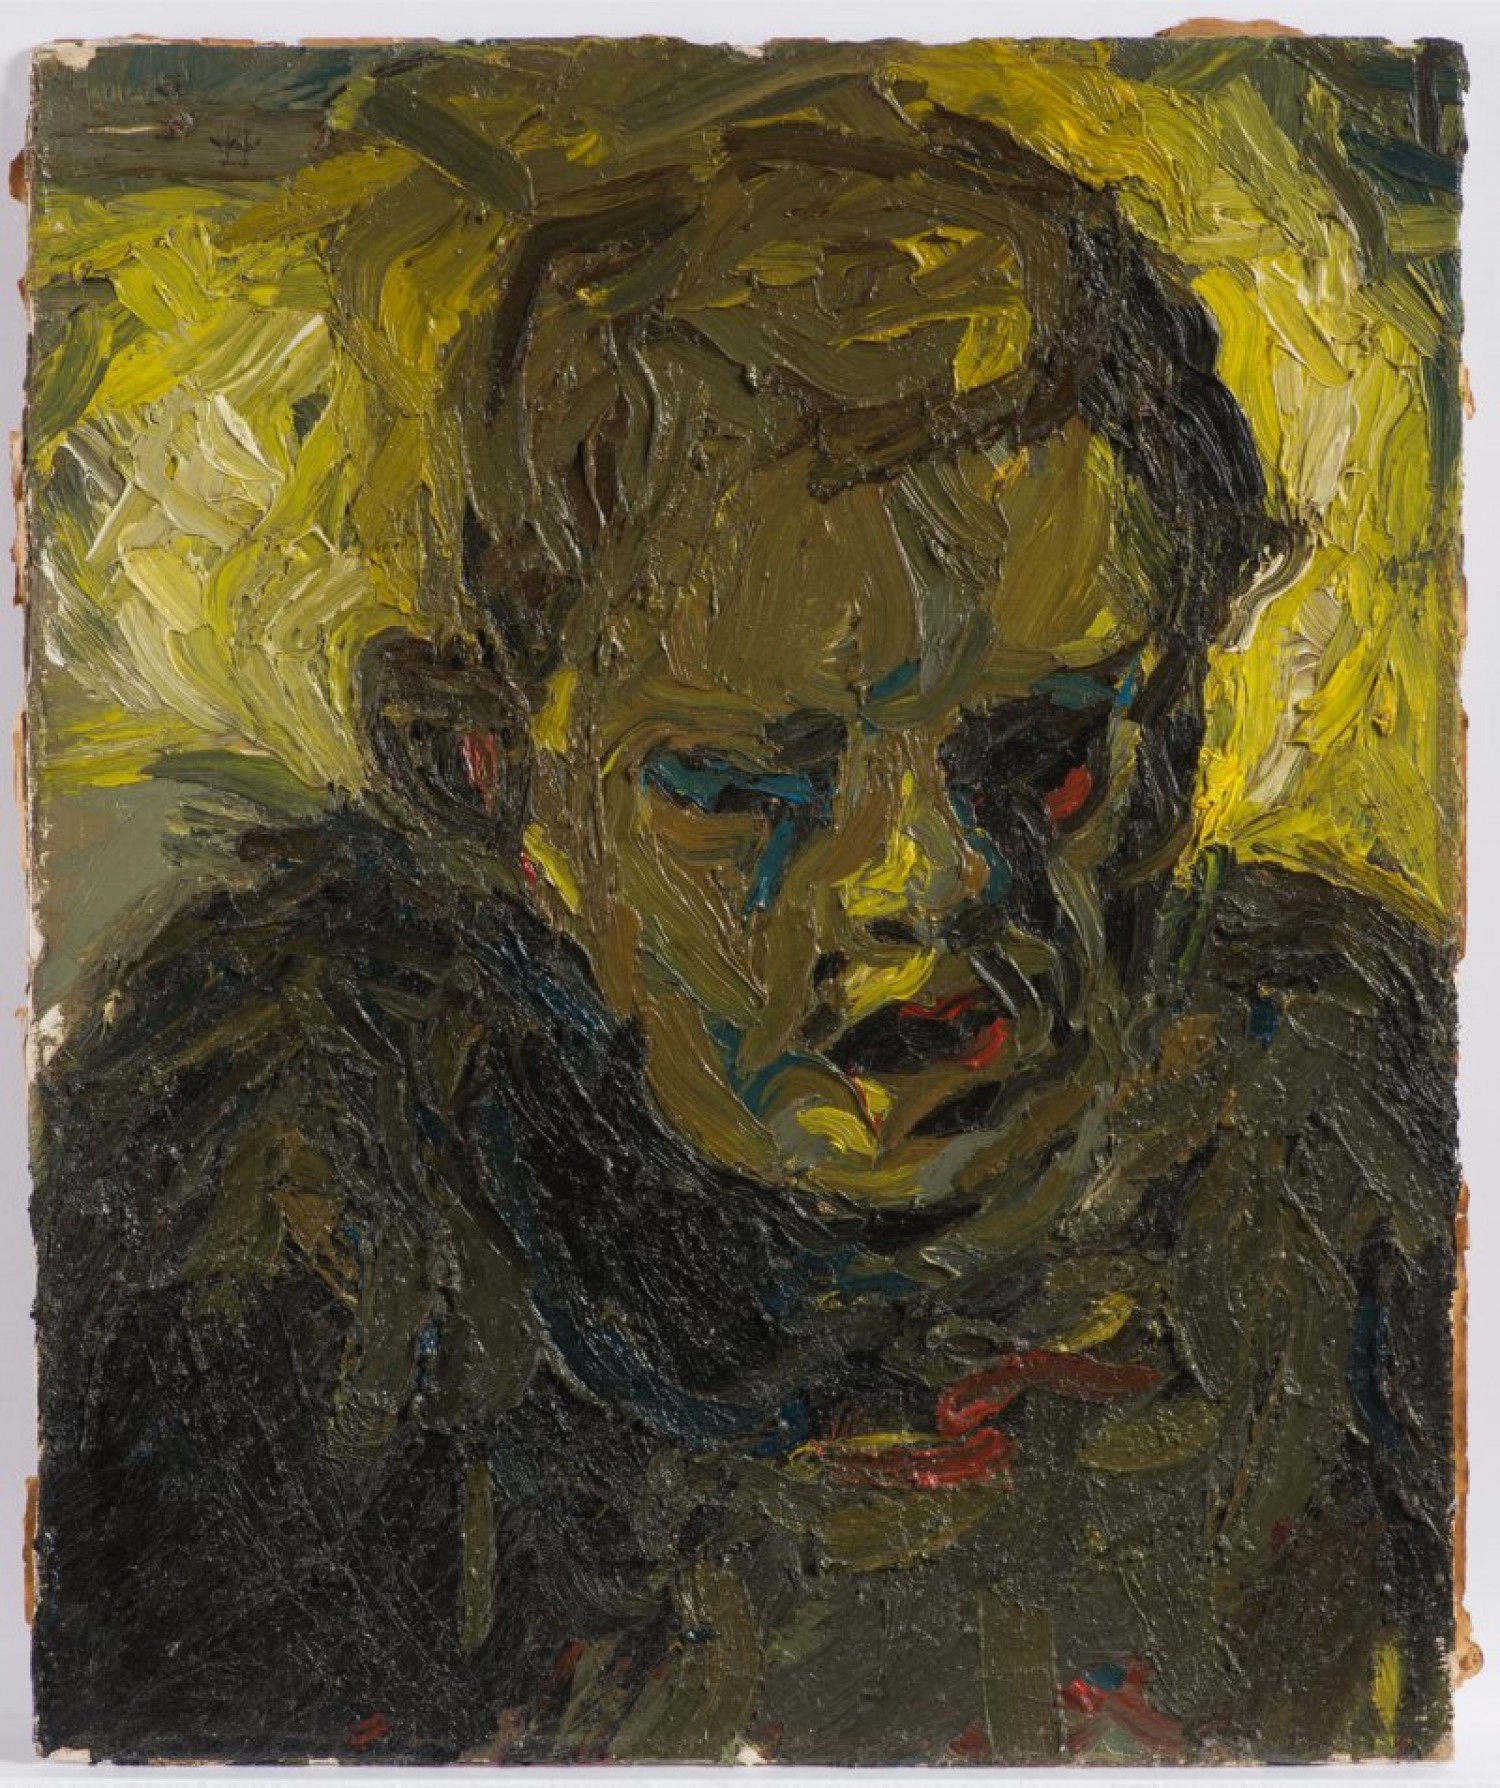 Wenzel Hablik: Podobizna muže, 1909, olej na lepence, 47 x 39,5 cm, cena: 421 600 Kč, Arthouse Hejtmánek 30. 11. 2017